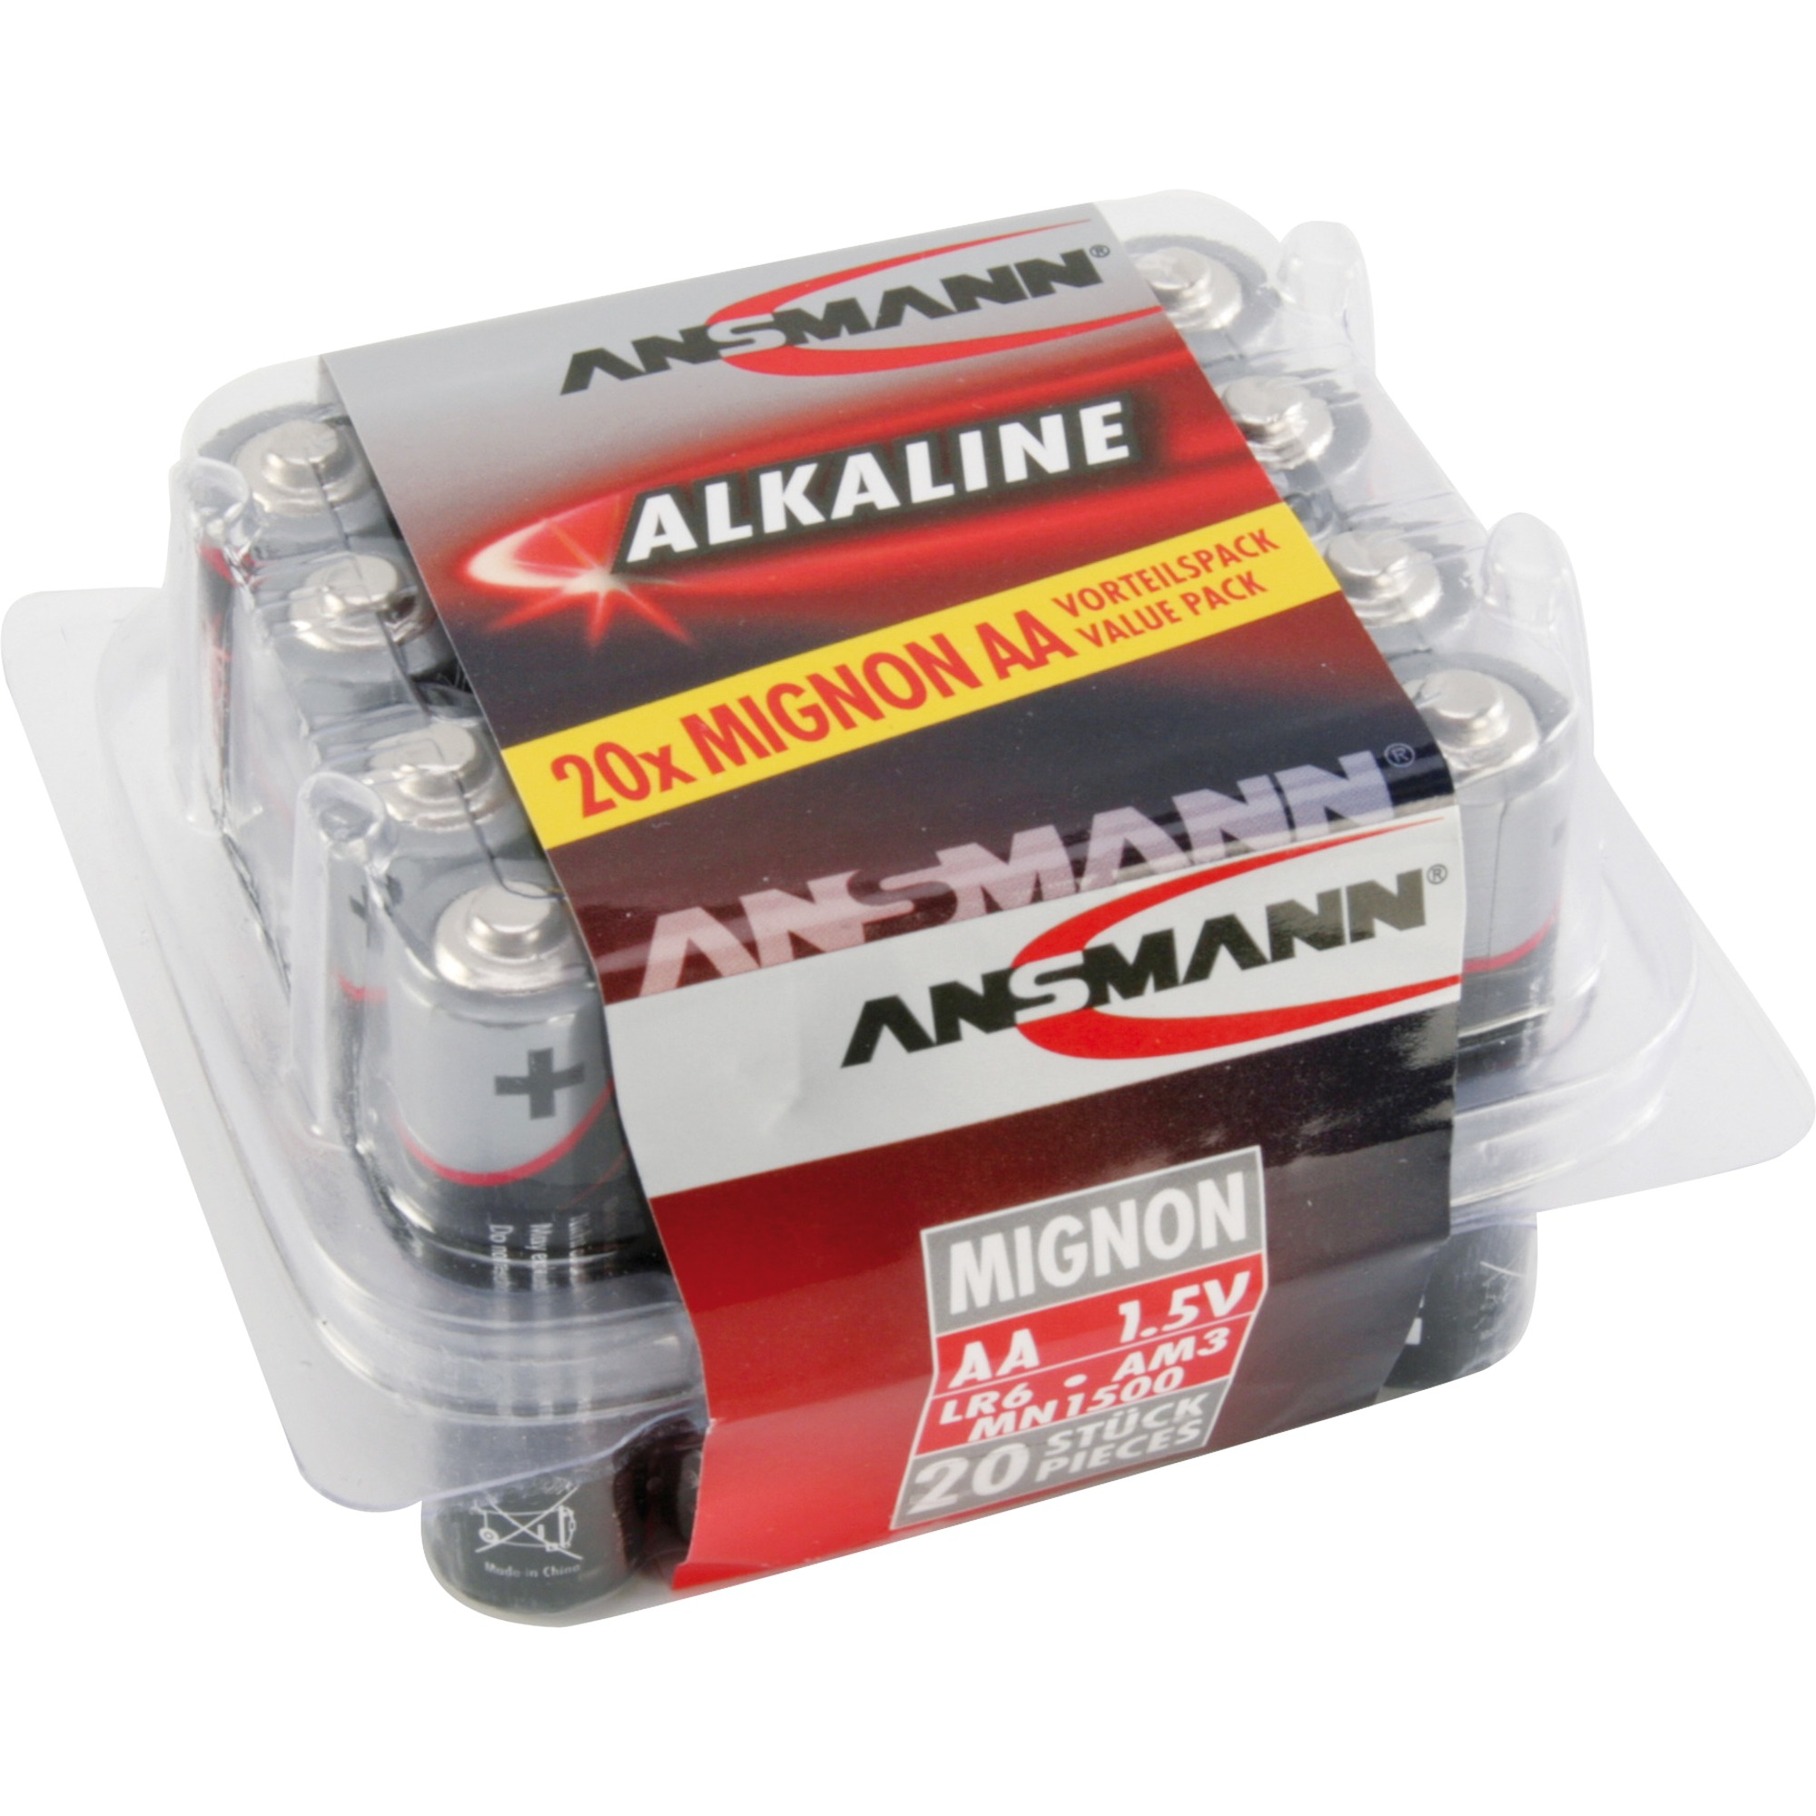 Alkaline Red, Batterie von Ansmann